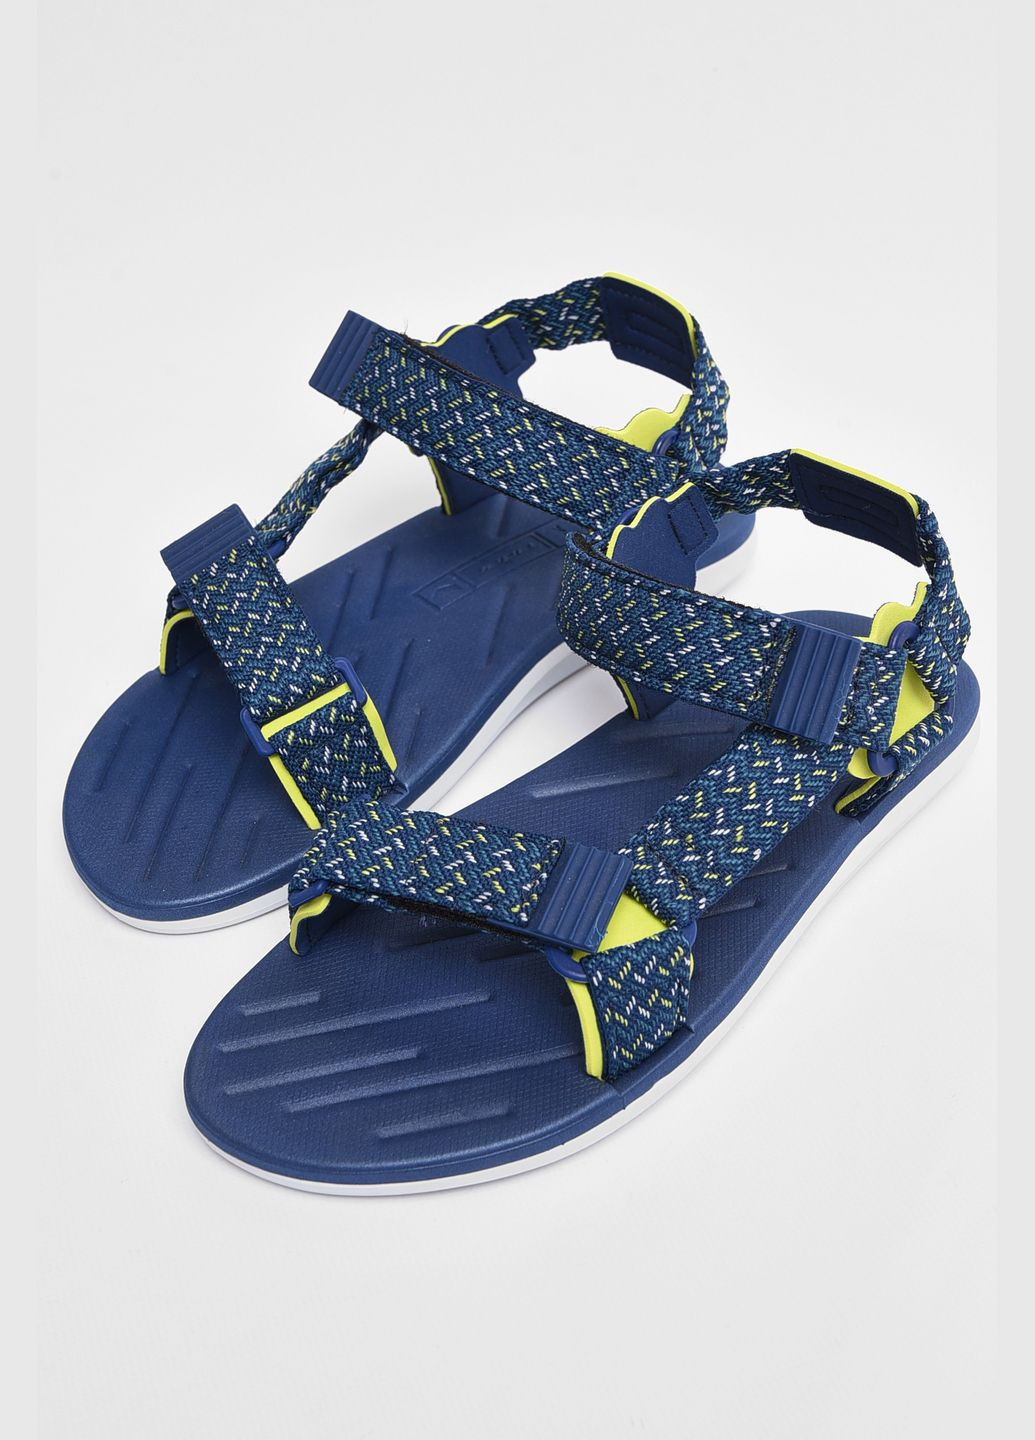 Пляжные сандалии мужские синего цвета Let's Shop на липучке